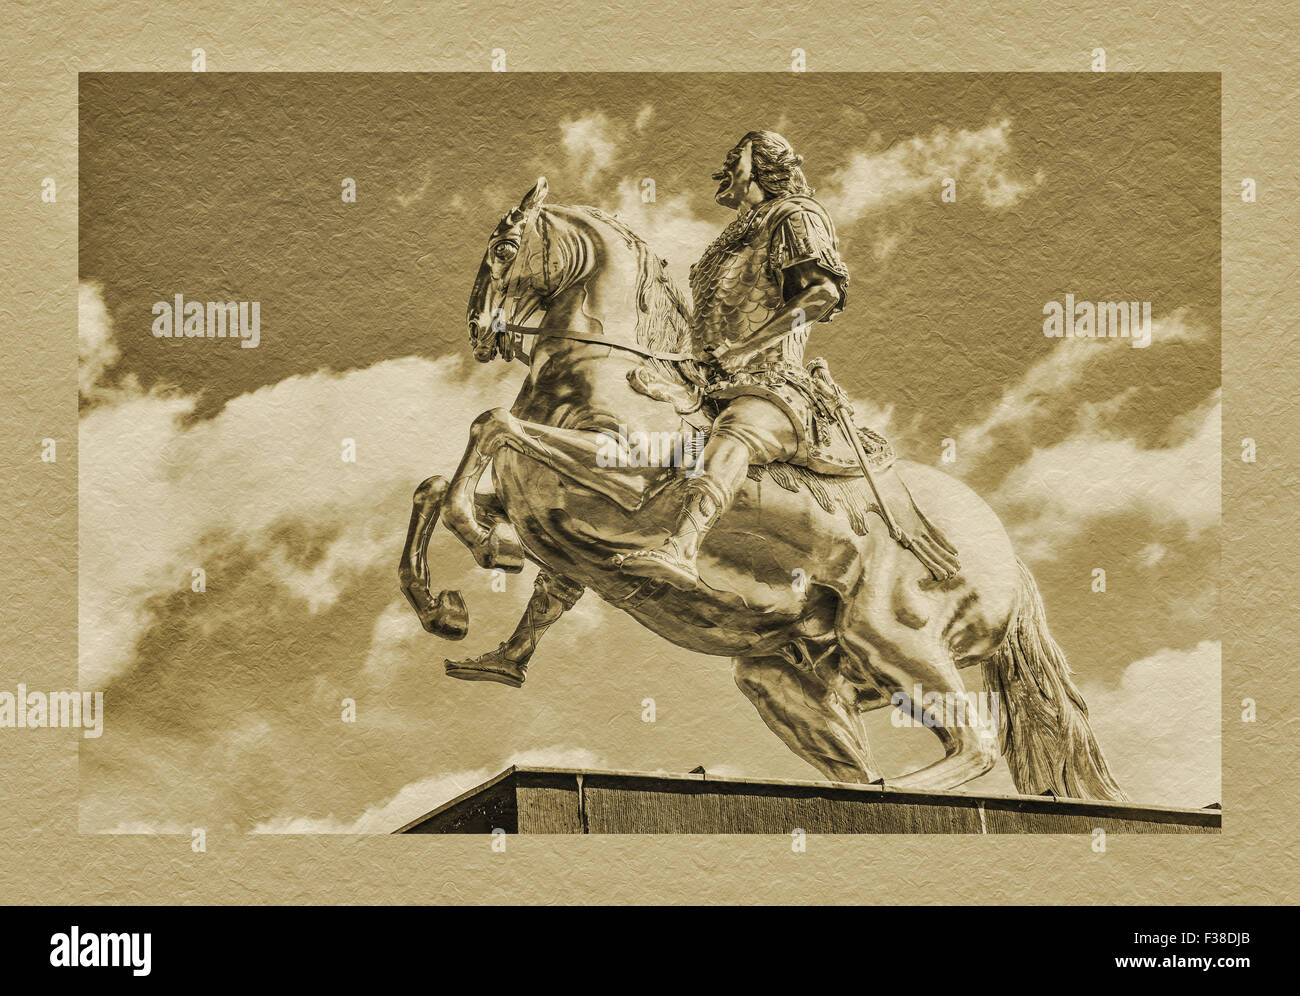 Le Golden Rider est une statue équestre de l'électeur de Saxe et roi de Pologne, Auguste le Fort à Dresde, Saxe, Allemagne Banque D'Images